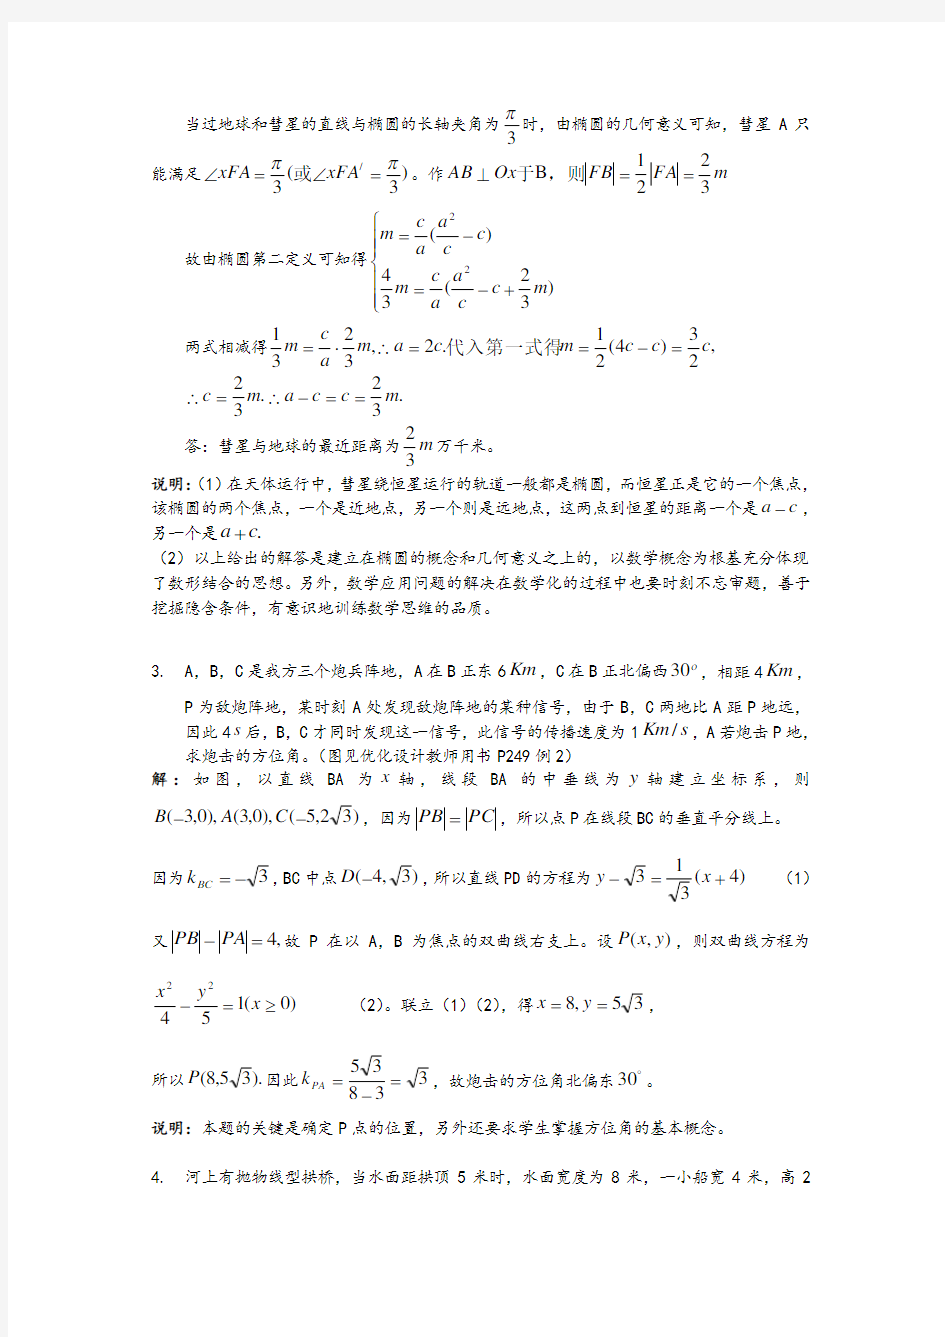 高中数学经典50题(附问题详解)